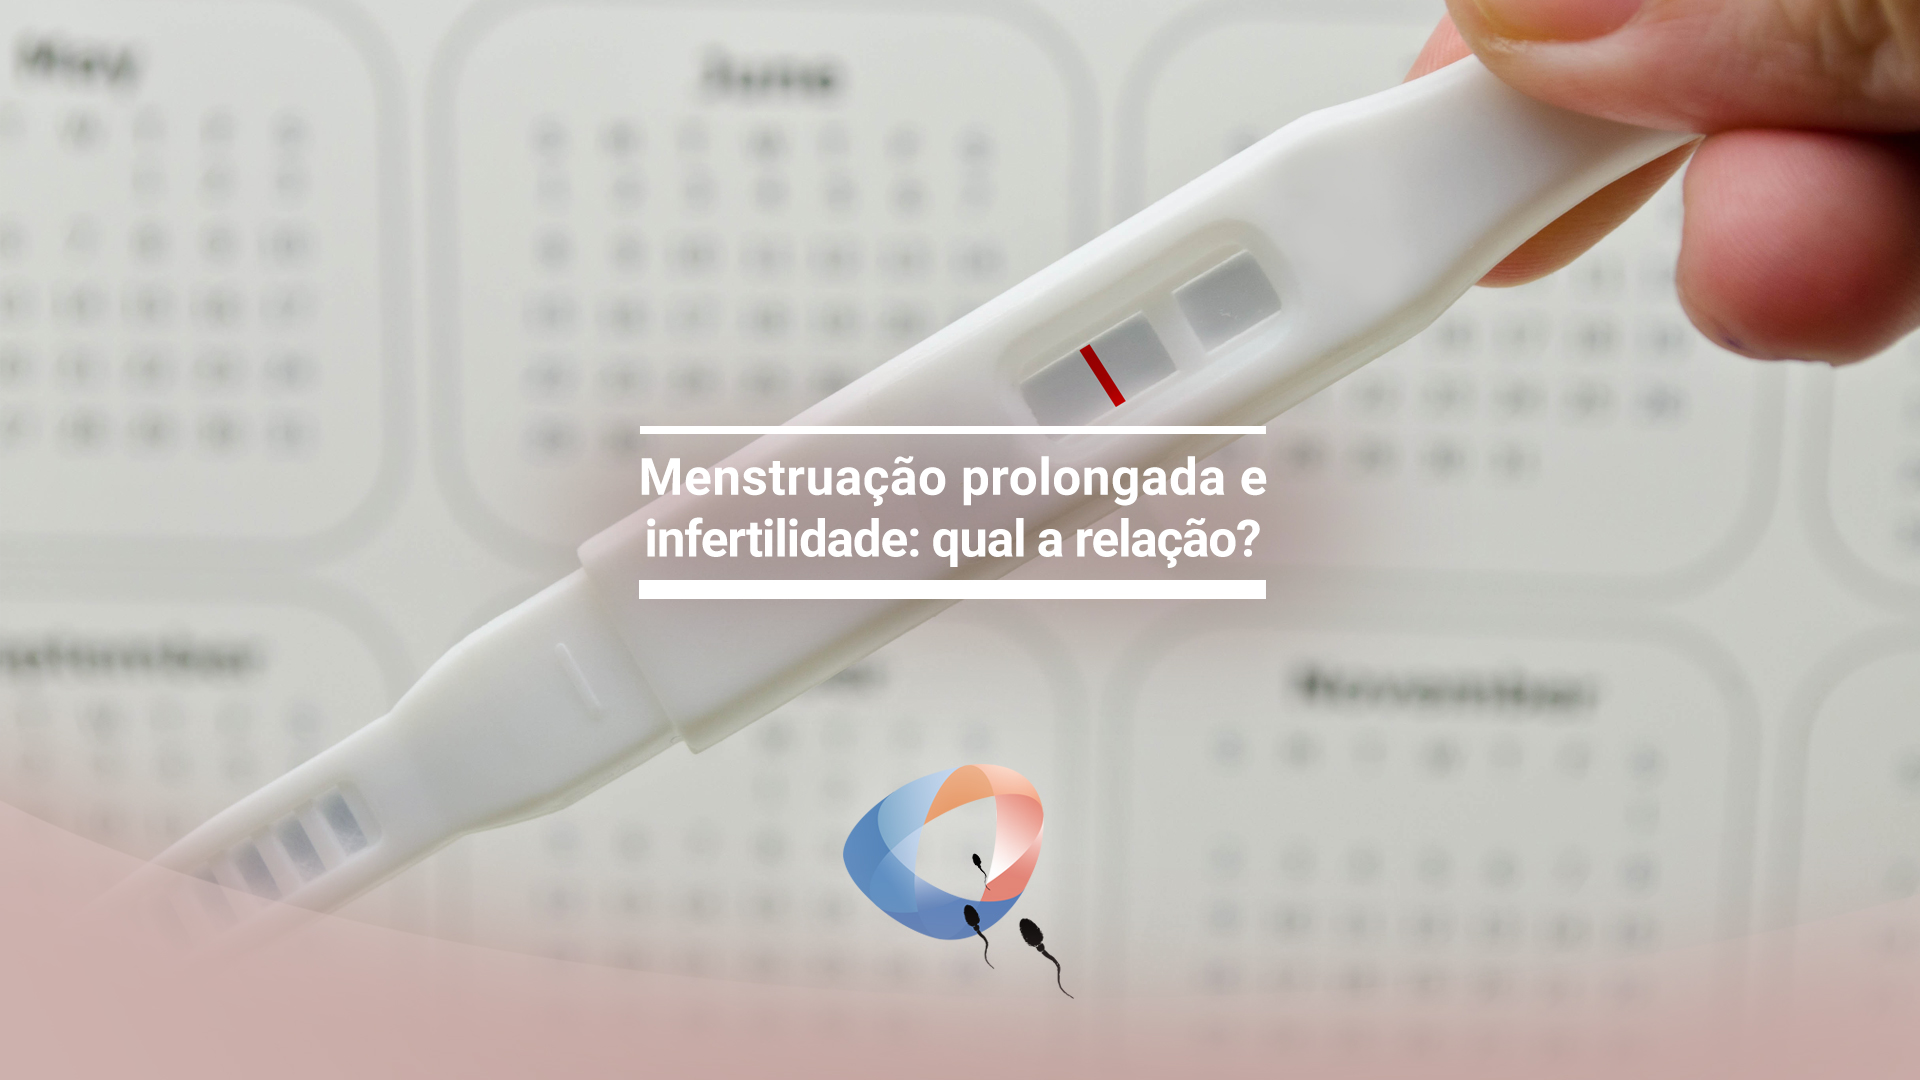 Menstruação prolongada e infertilidade: qual a relação?